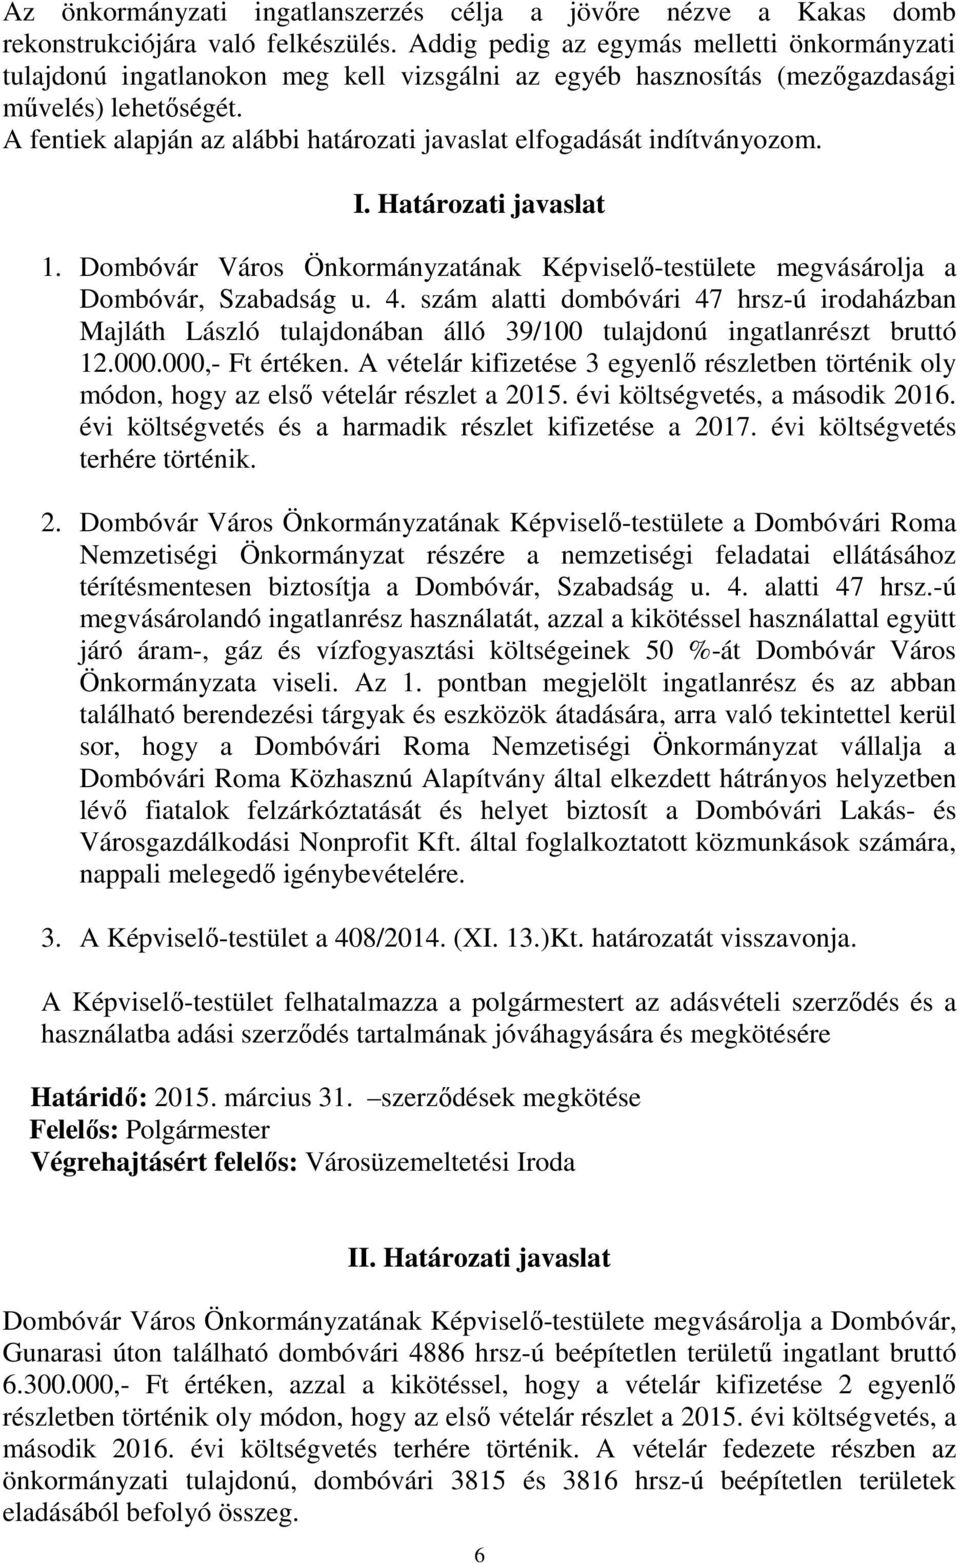 A fentiek alapján az alábbi határozati javaslat elfogadását indítványozom. I. Határozati javaslat 1. Dombóvár Város Önkormányzatának Képviselő-testülete megvásárolja a Dombóvár, Szabadság u. 4.